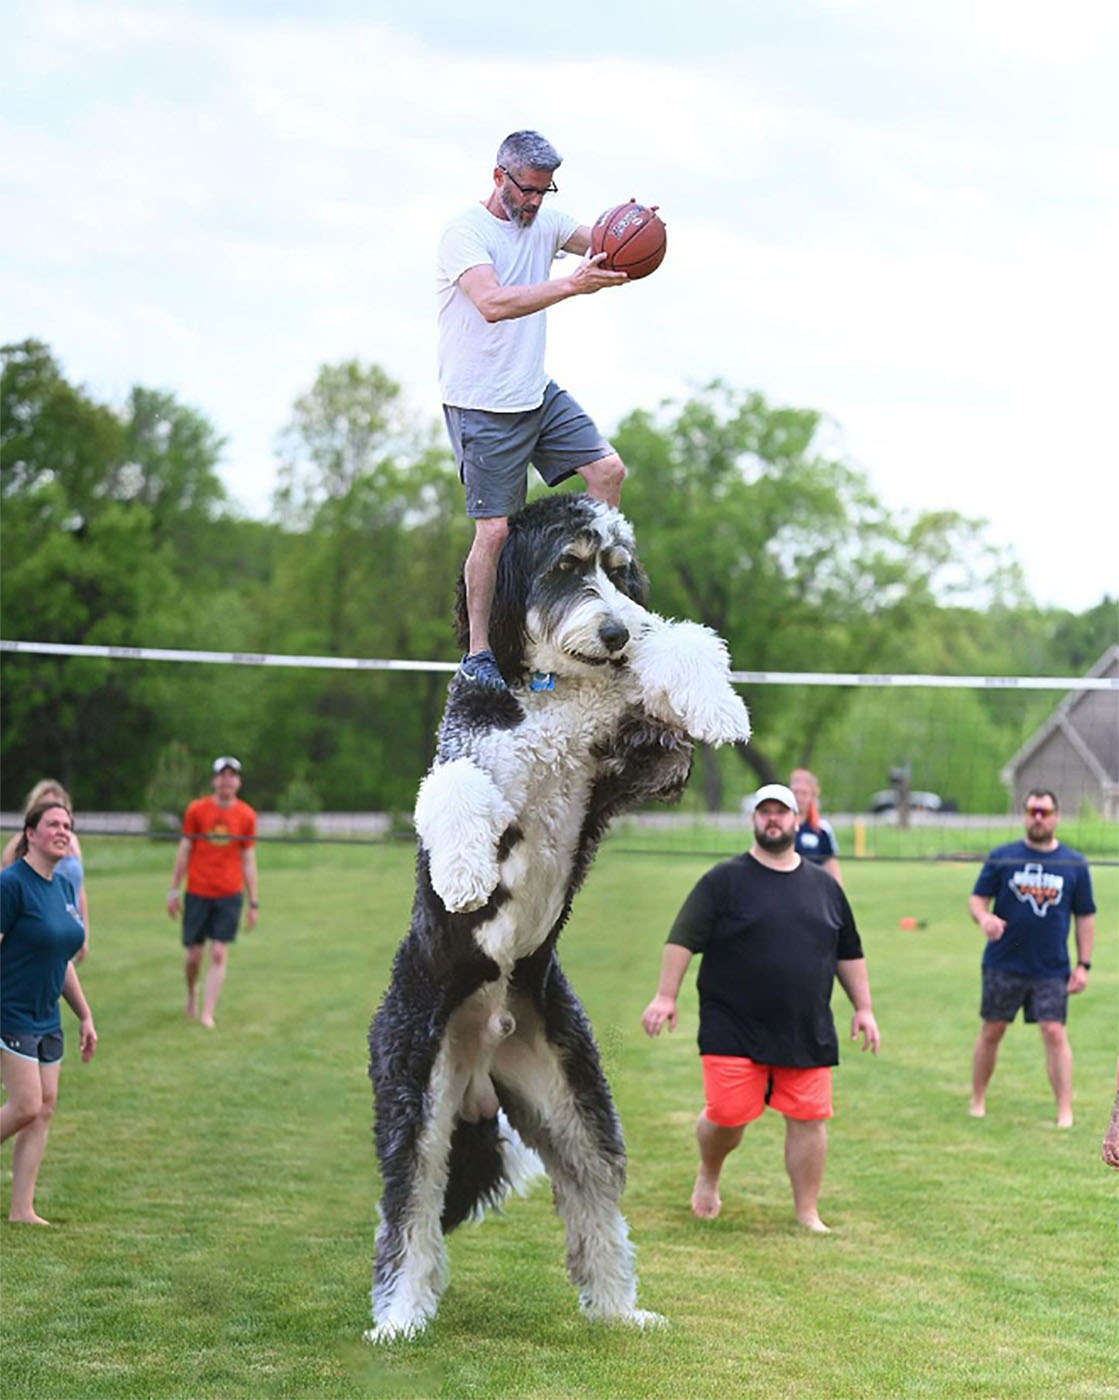 Christopher Cline brincando de jogar vôlei com juji, o cão gigante